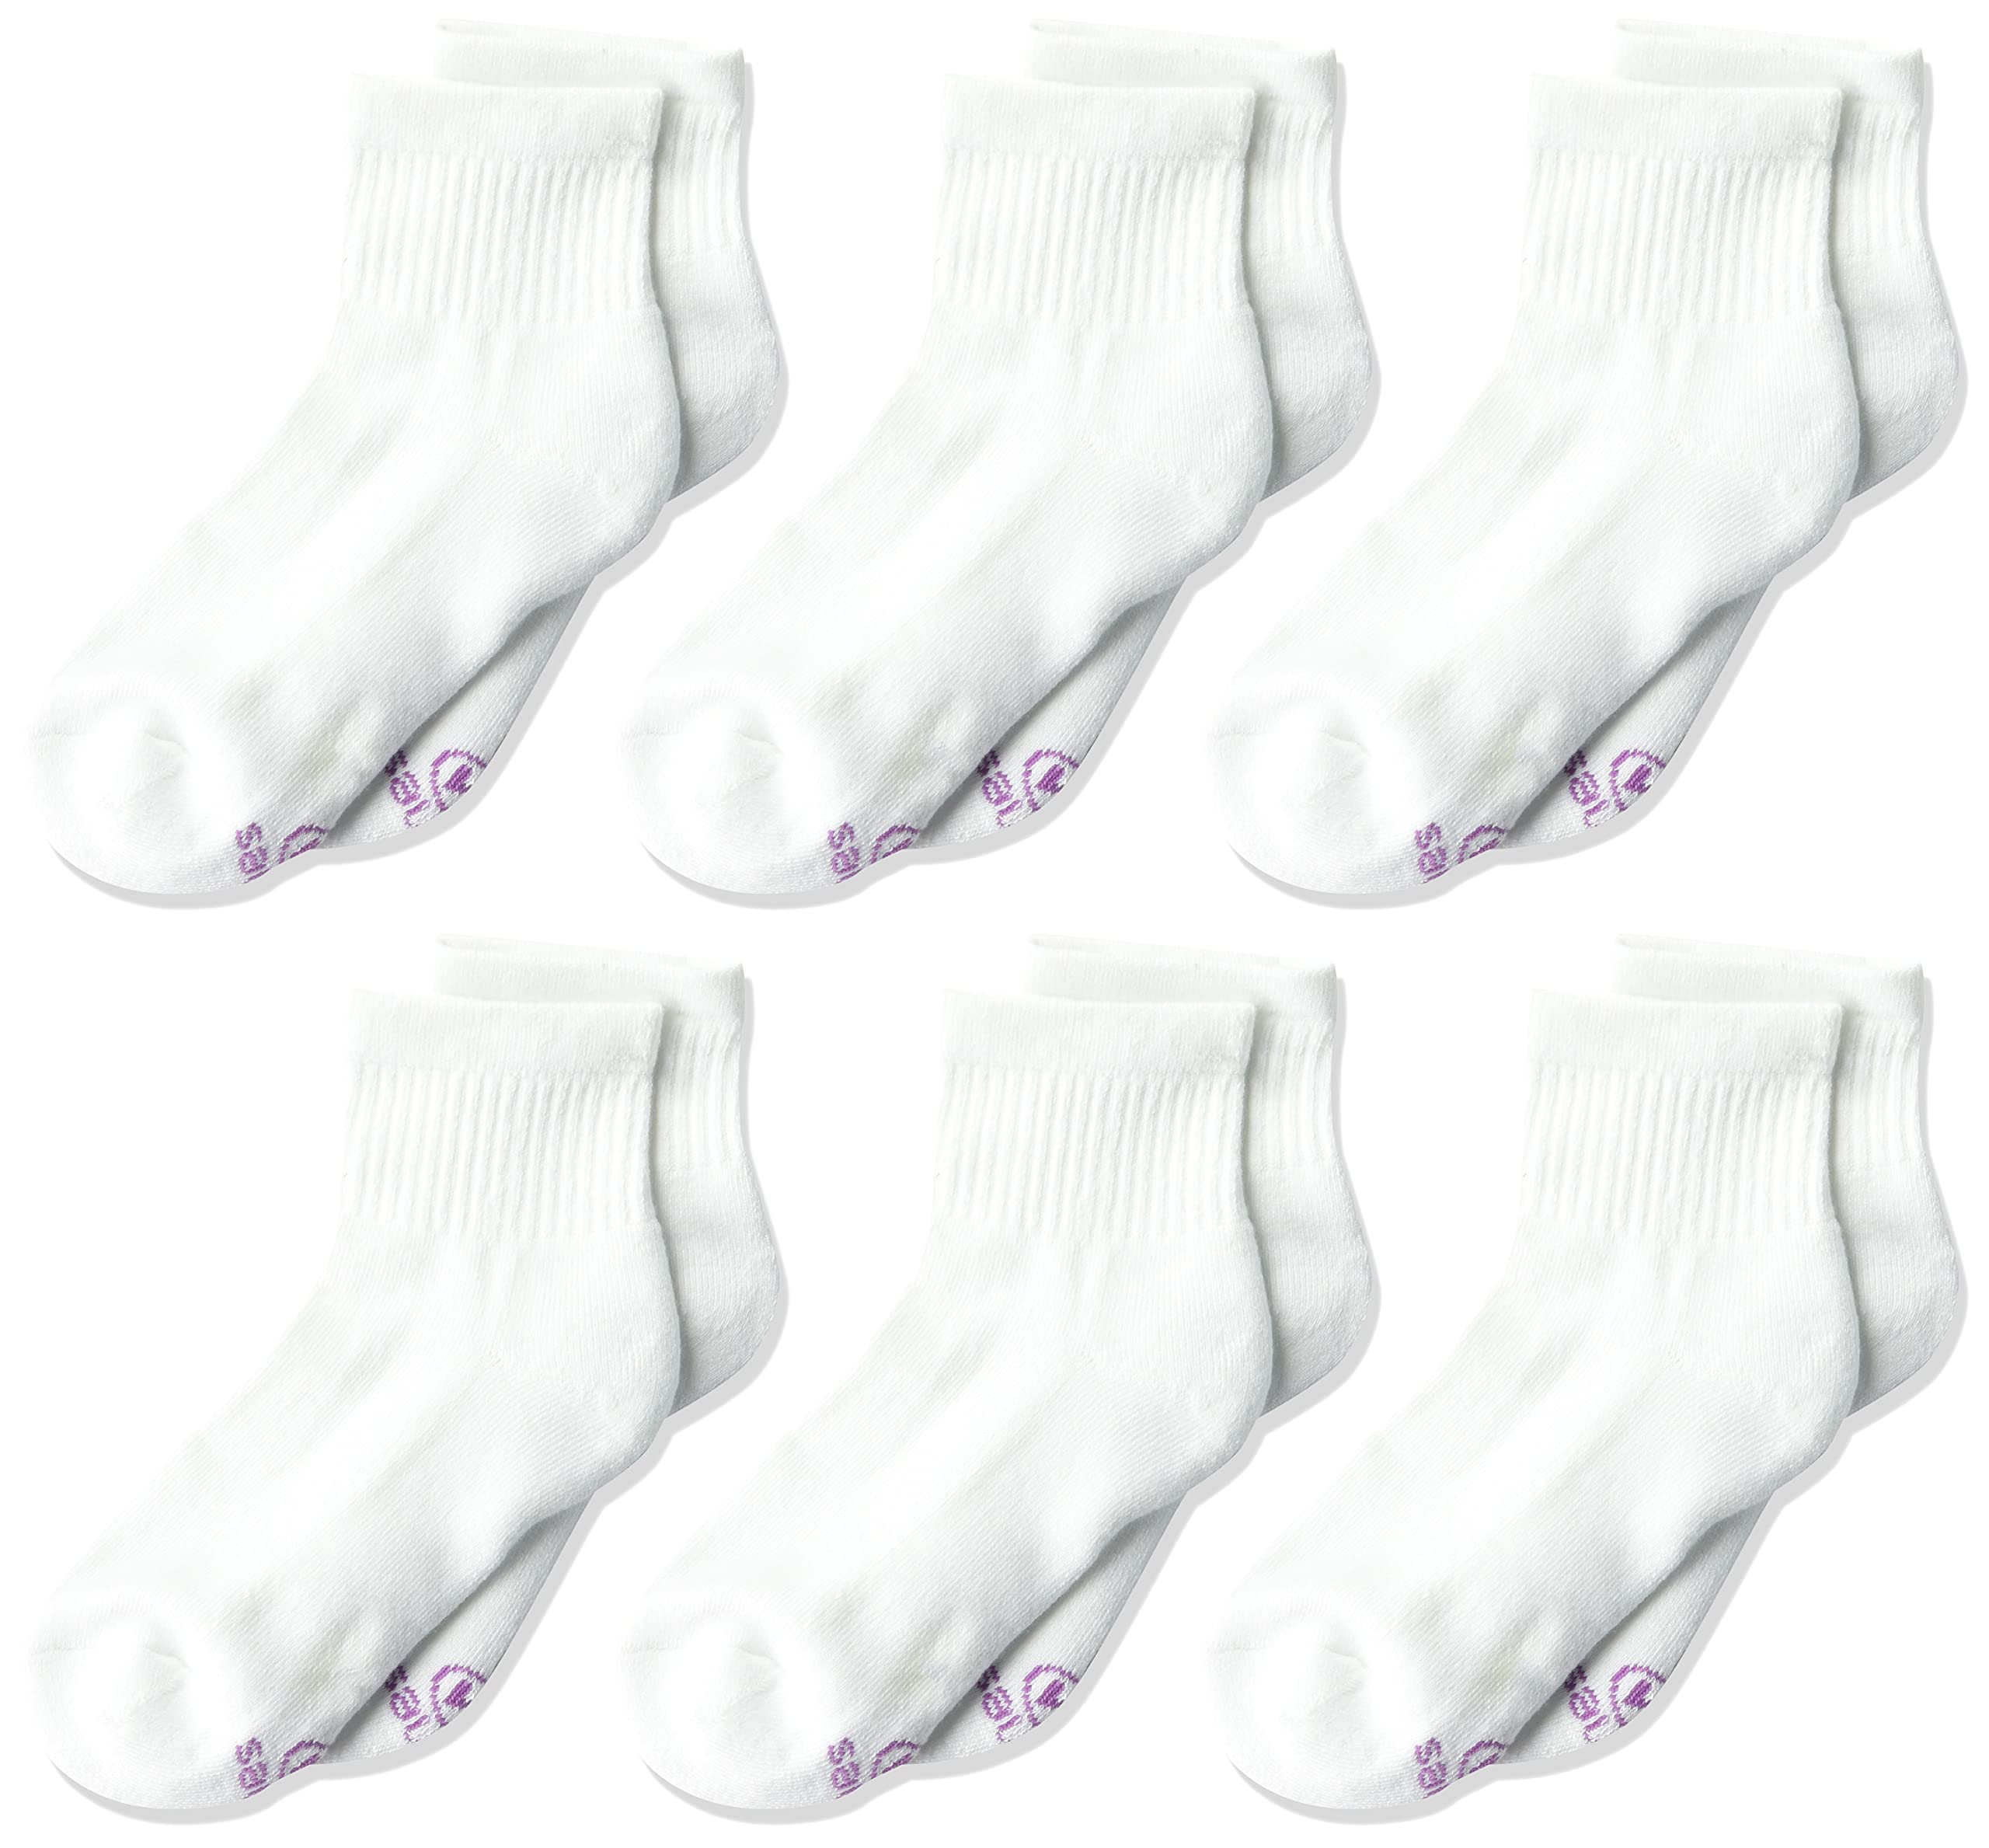 Hanes Ultimate Girls' 6-Pair Pack Ankle Socks